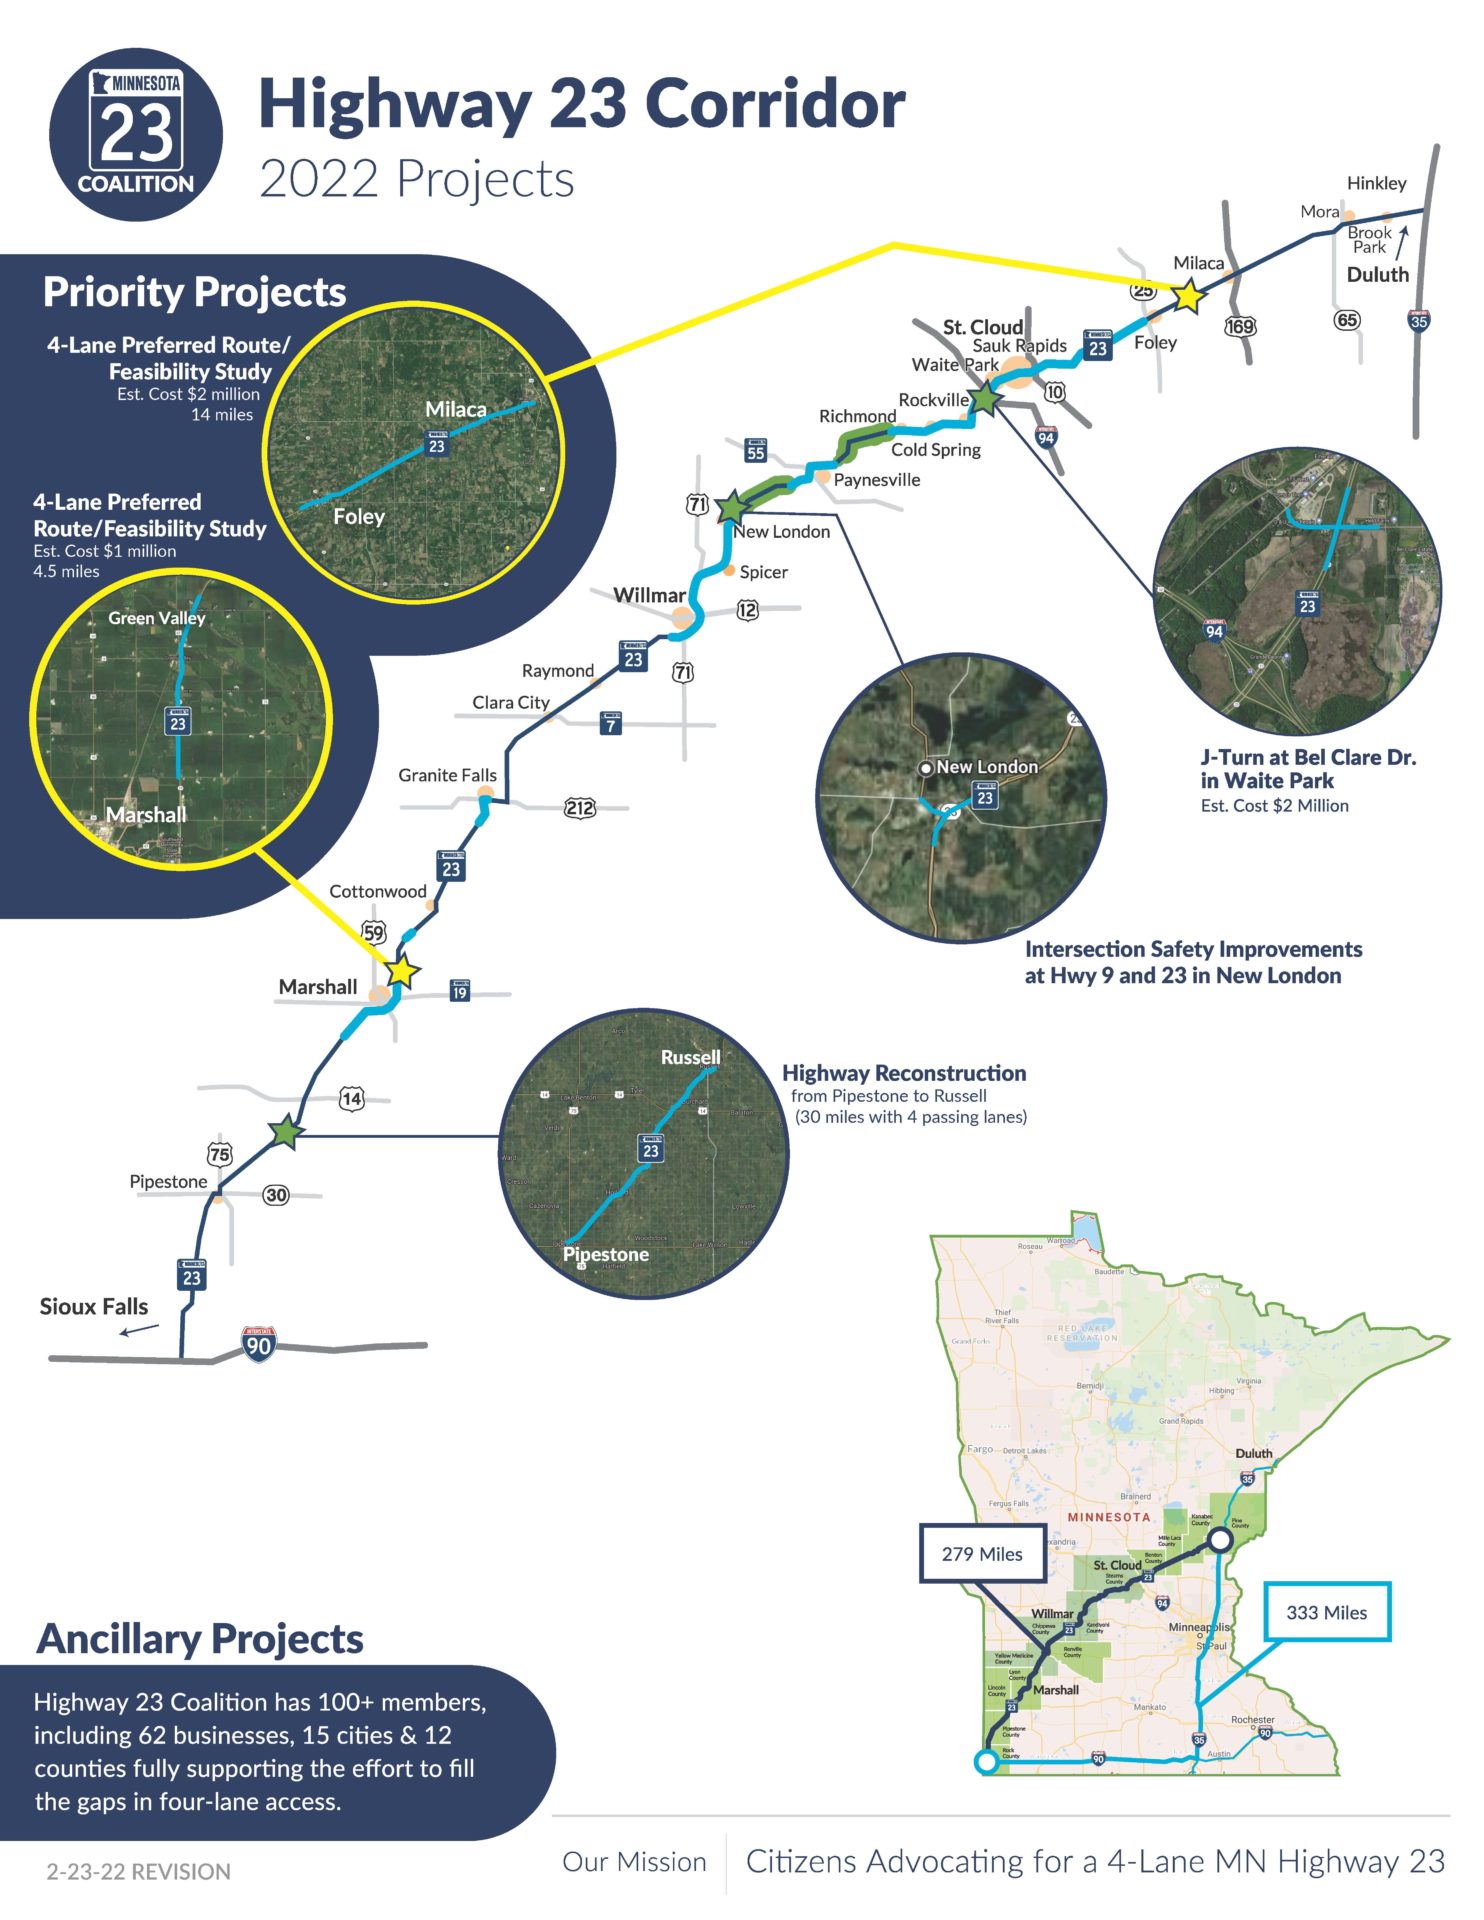 Highway 23 Corridor 2021 Priority Projects